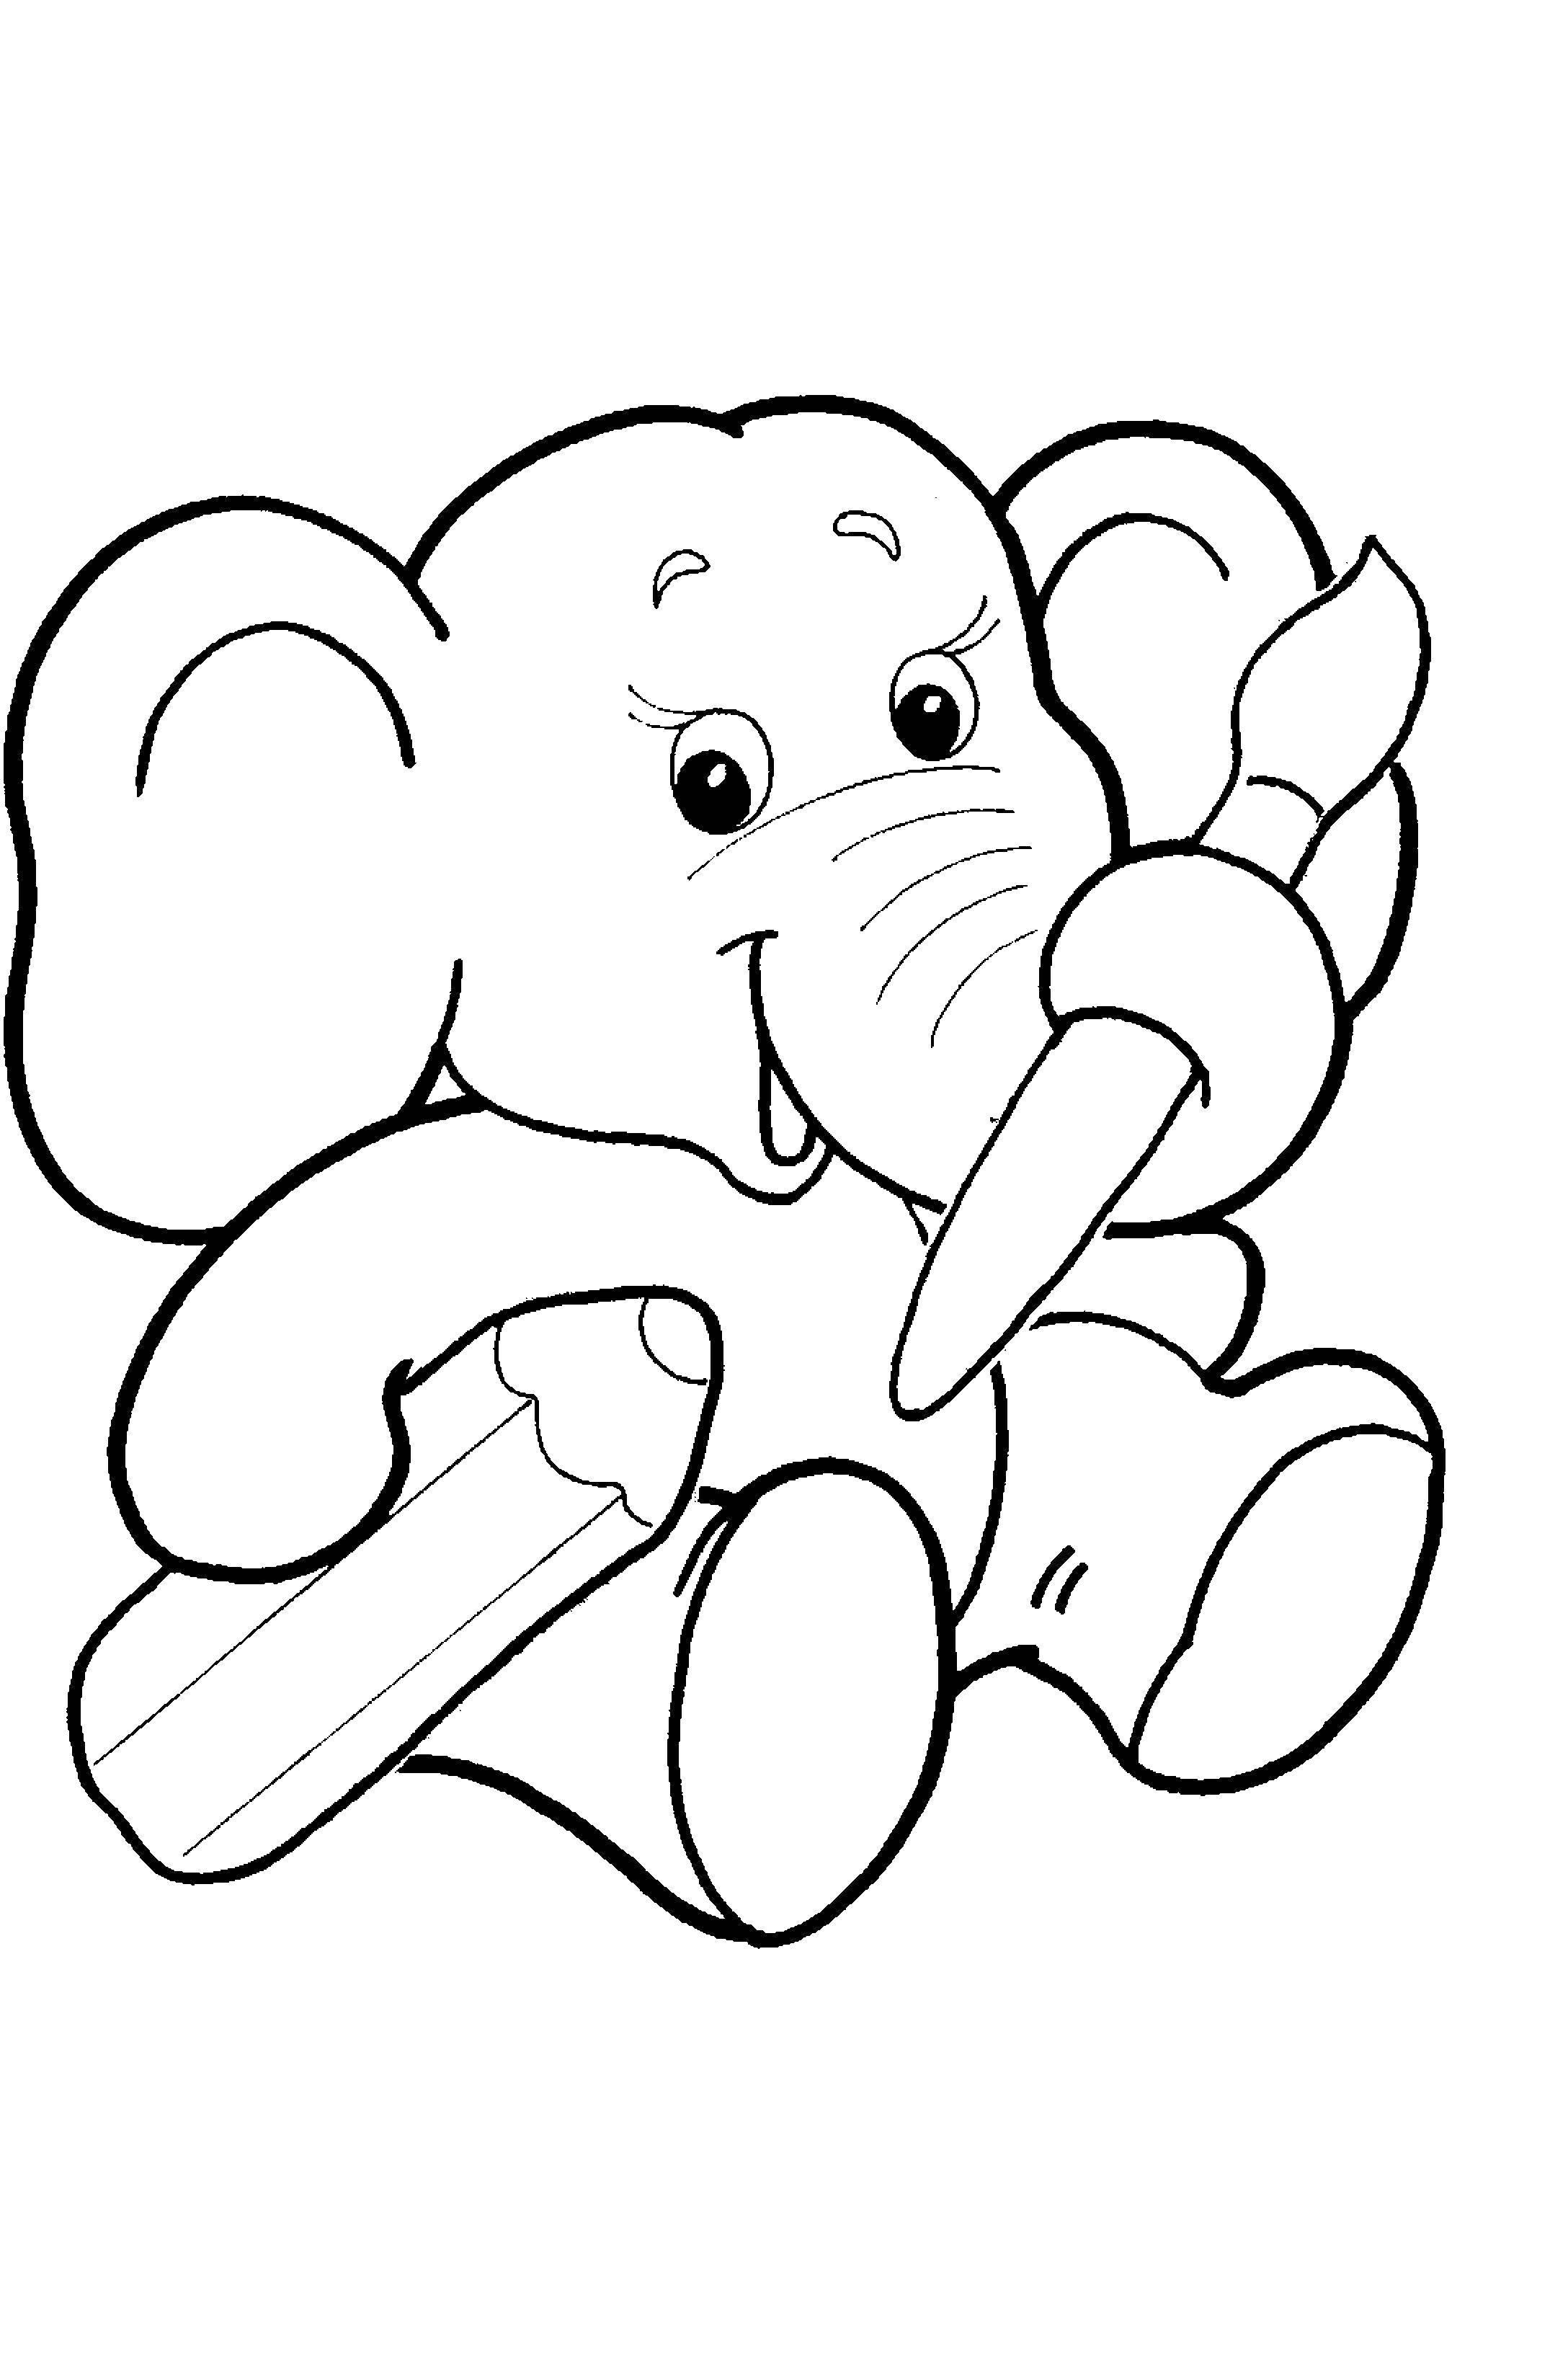   Слоненок рисует